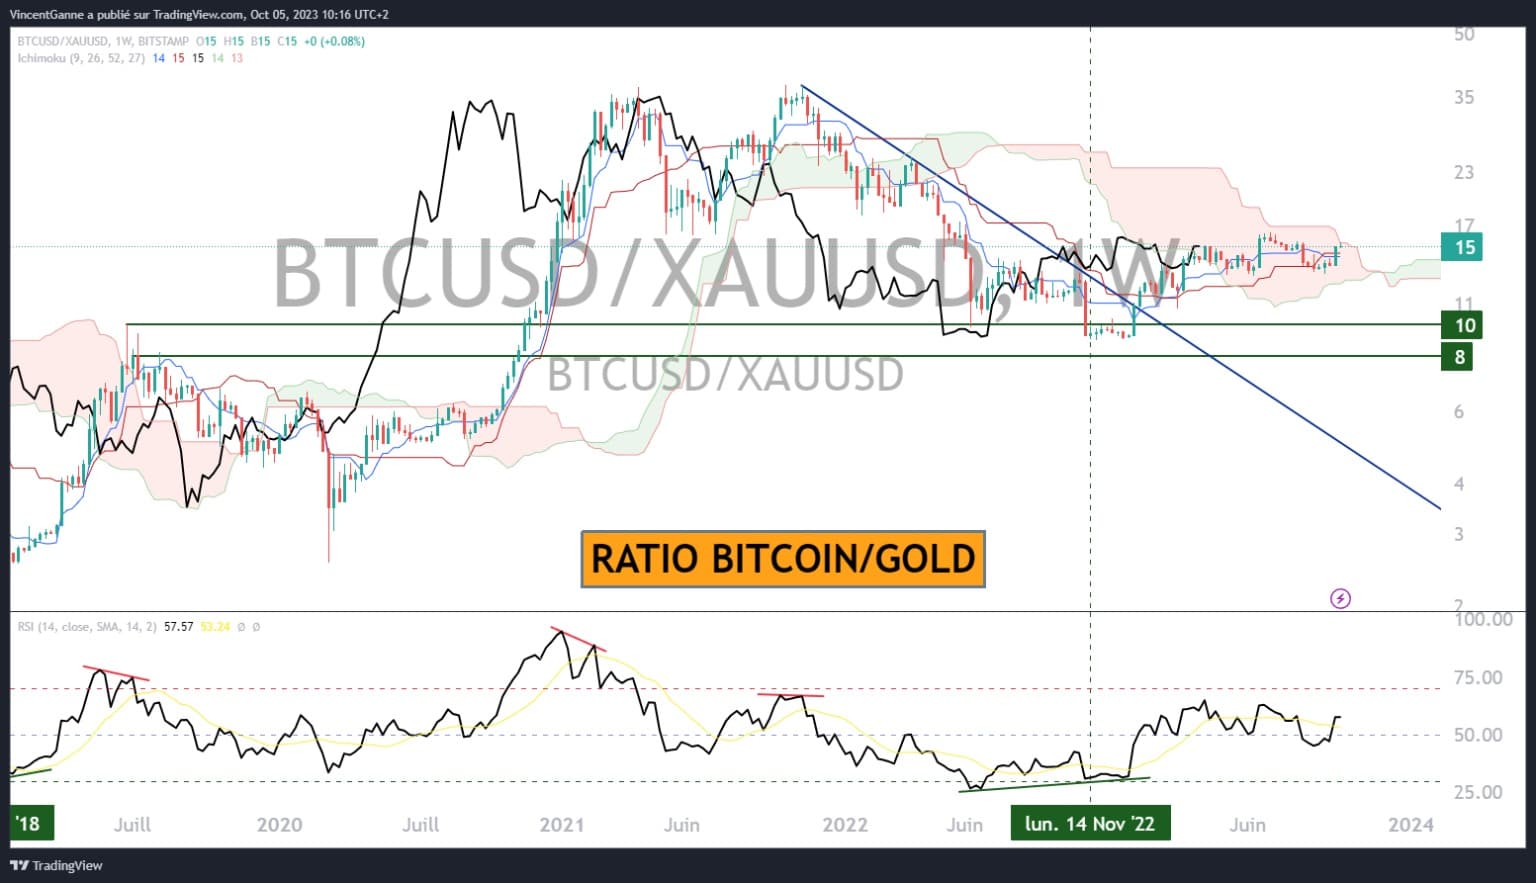 Graf znázorňující poměr bitcoinu a zlata v týdenním časovém horizontu